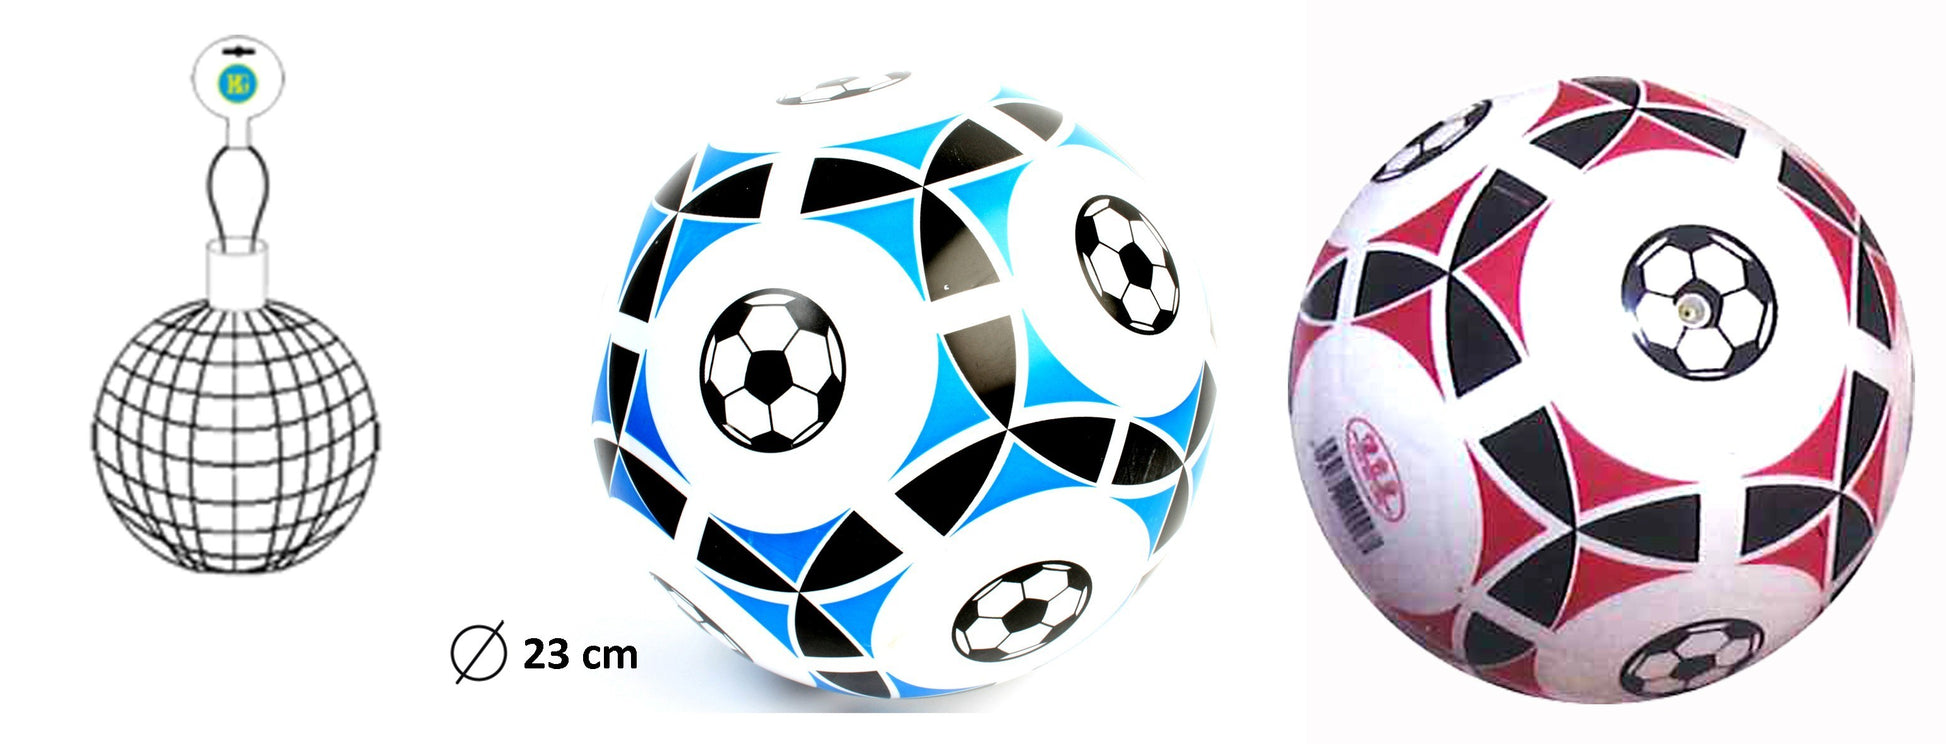 Ballon de foot en plastique pour enfant - Grossiste jouet, kermesse –  MONDOCASH